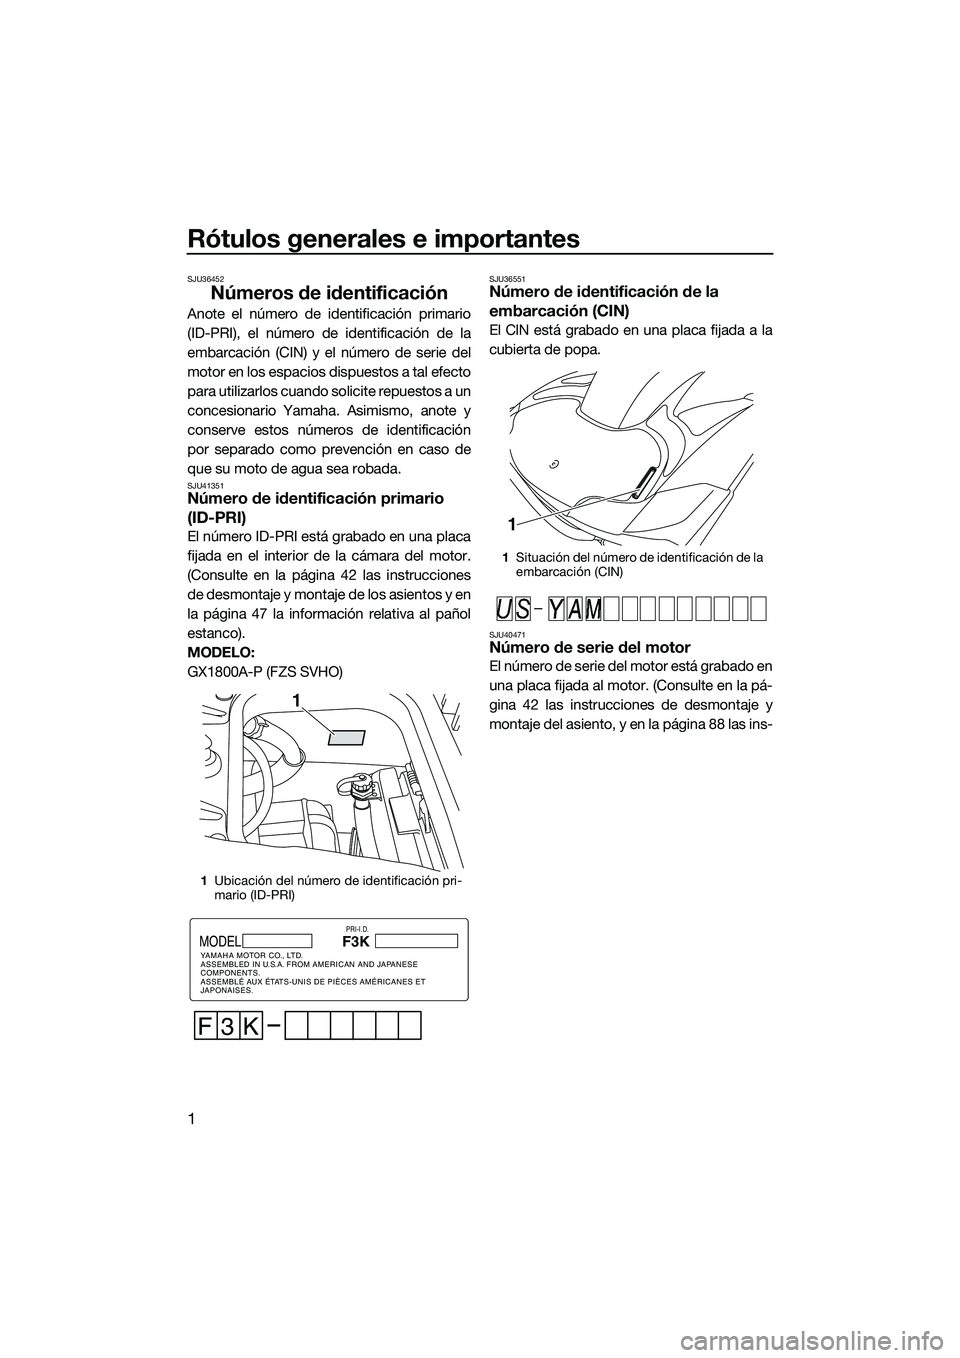 YAMAHA FZS SVHO 2015  Manuale de Empleo (in Spanish) Rótulos generales e importantes
1
SJU36452
Números de identificación
Anote el número de identificación primario
(ID-PRI), el número de identificación de la
embarcación (CIN) y el número de se